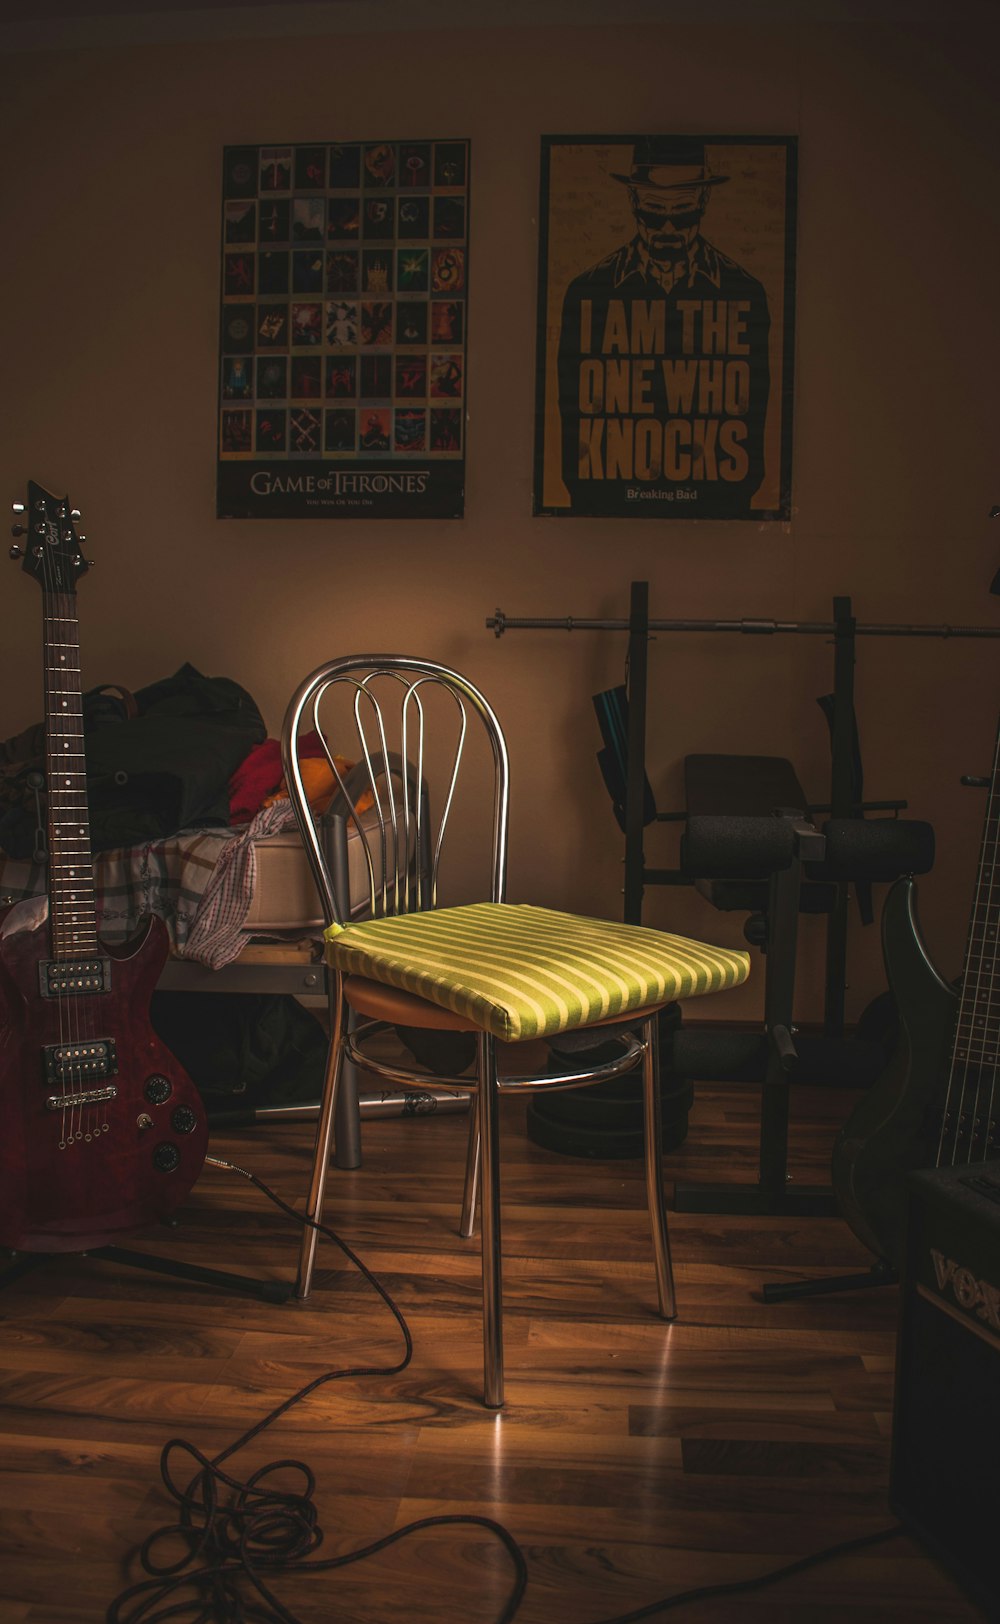 green cloth on chair near guitar